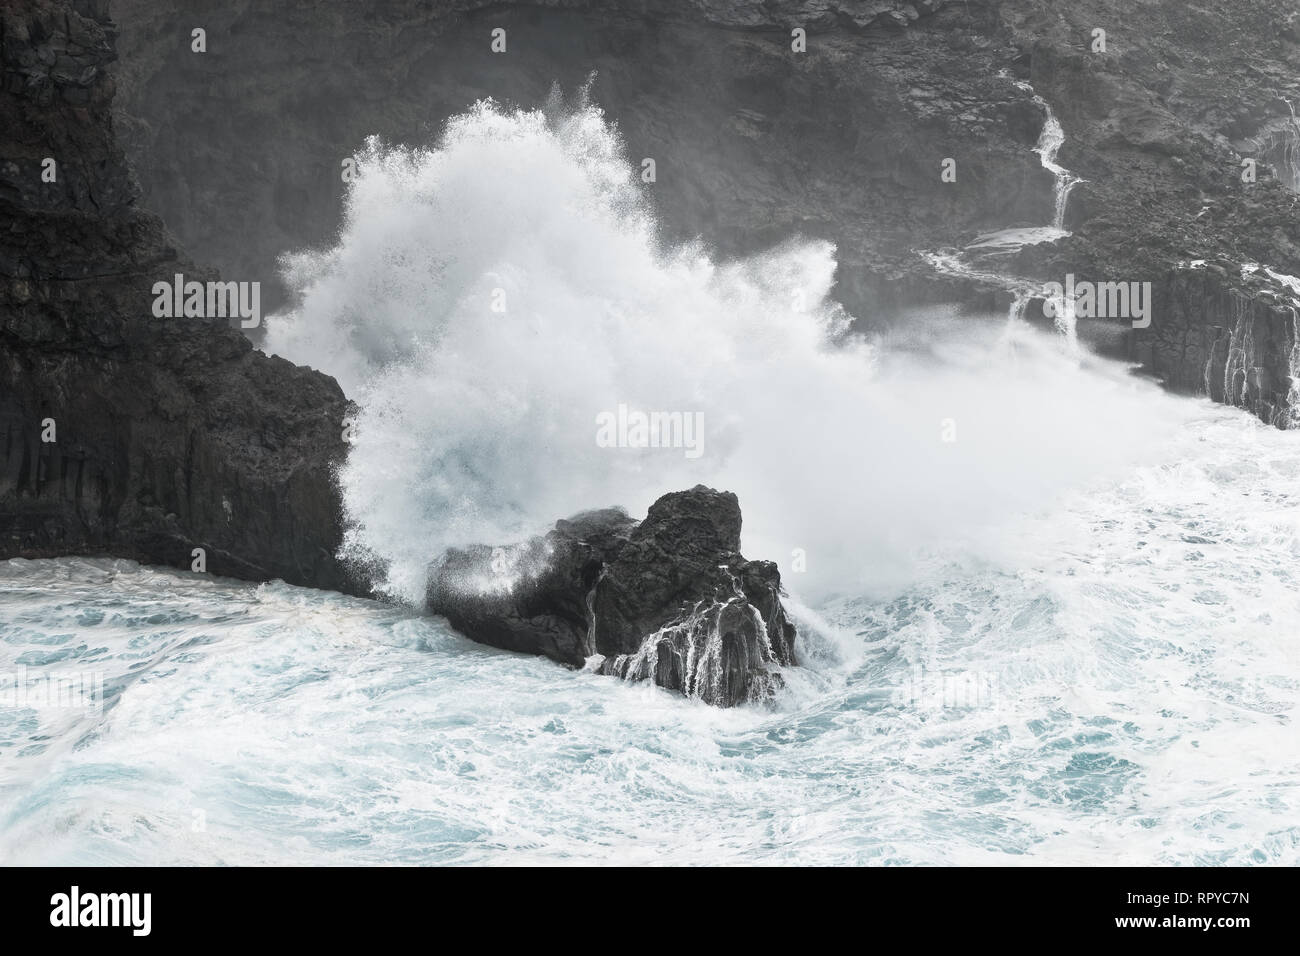 Eine Welle bricht bei stürmischem Wetter auf einer felsigen Küste mit einem kleinen Bucht, Gischt spritzt weit oben, aus dem Felsen, Wasser läuft wieder zurück ins Meer - Ort: Spa Stockfoto